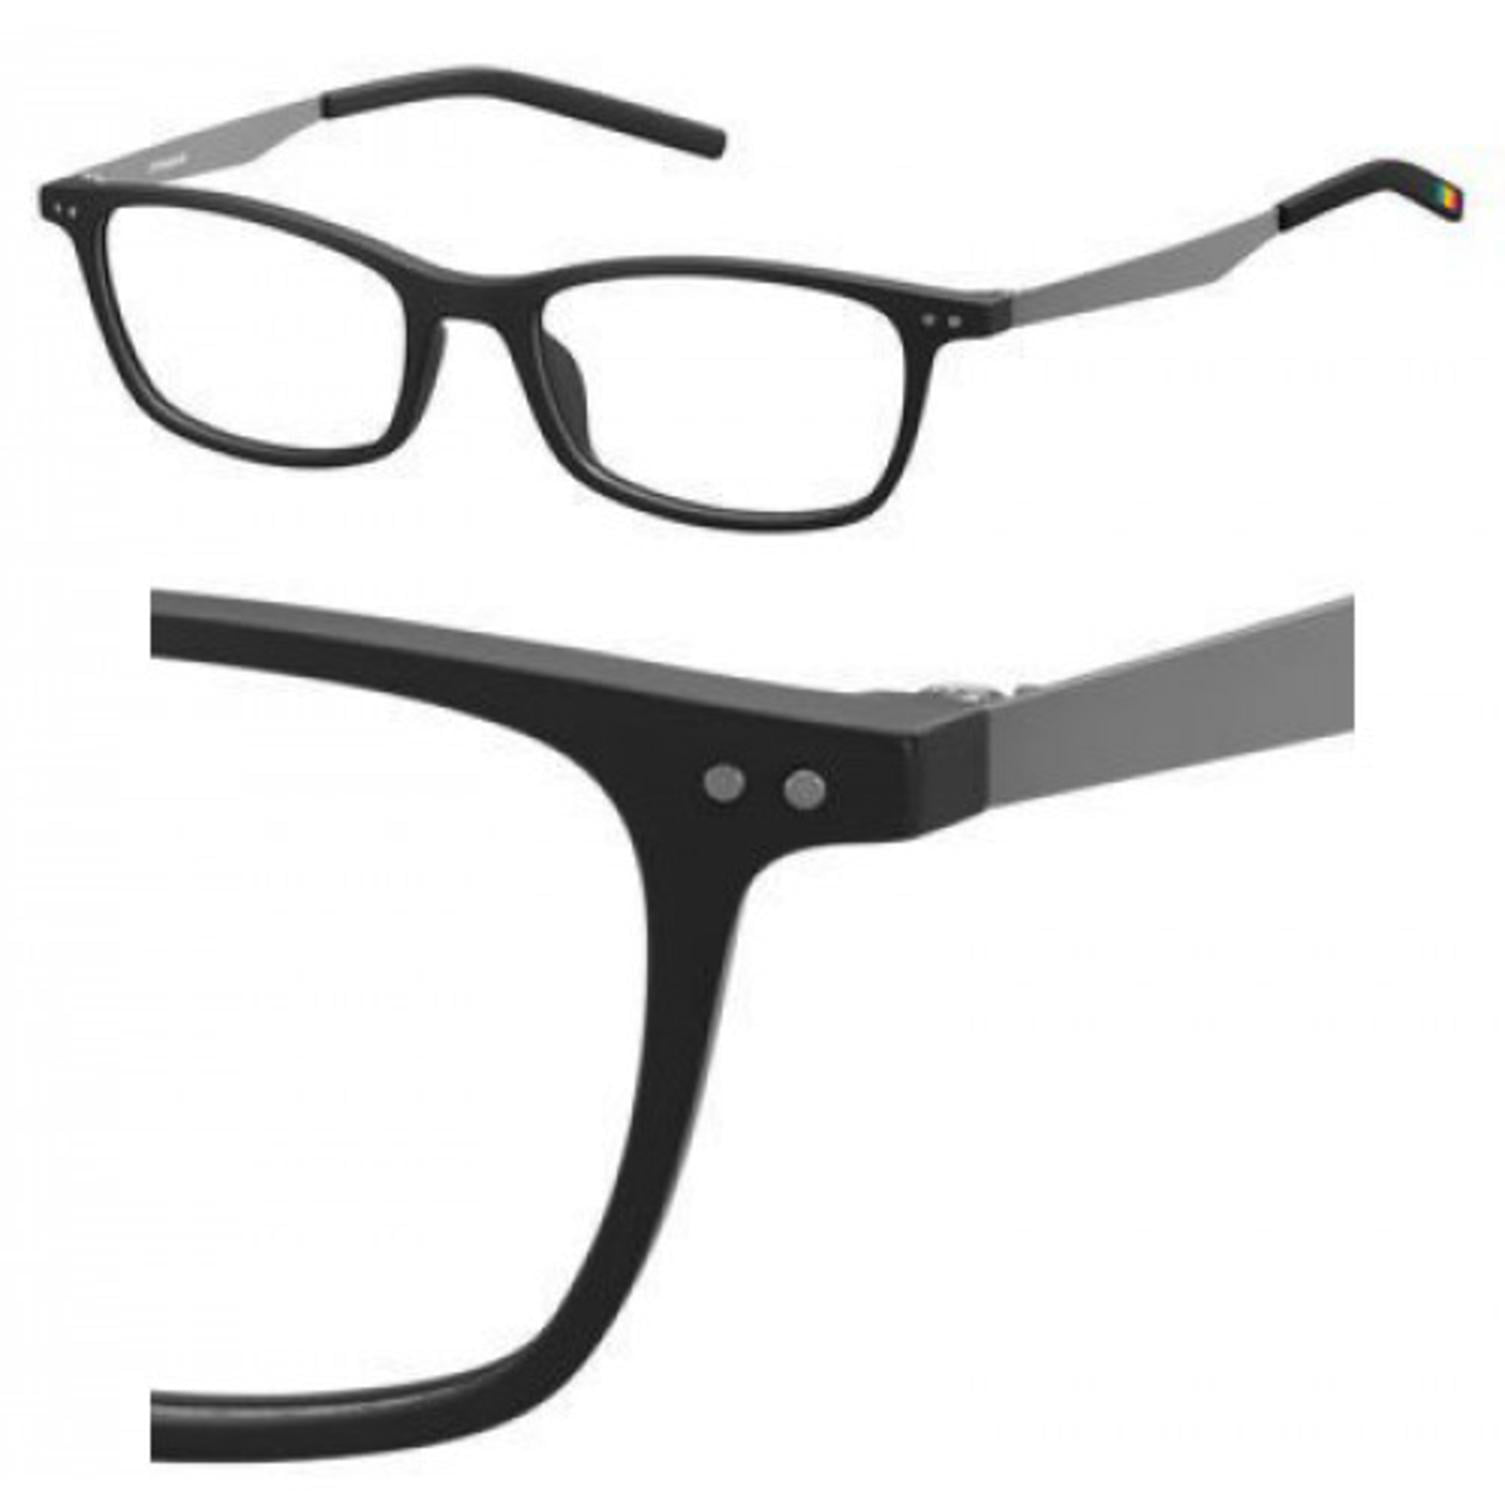 NEW Polaroid PLD326 003 50mm Black Optical Eyeglasses Frames 